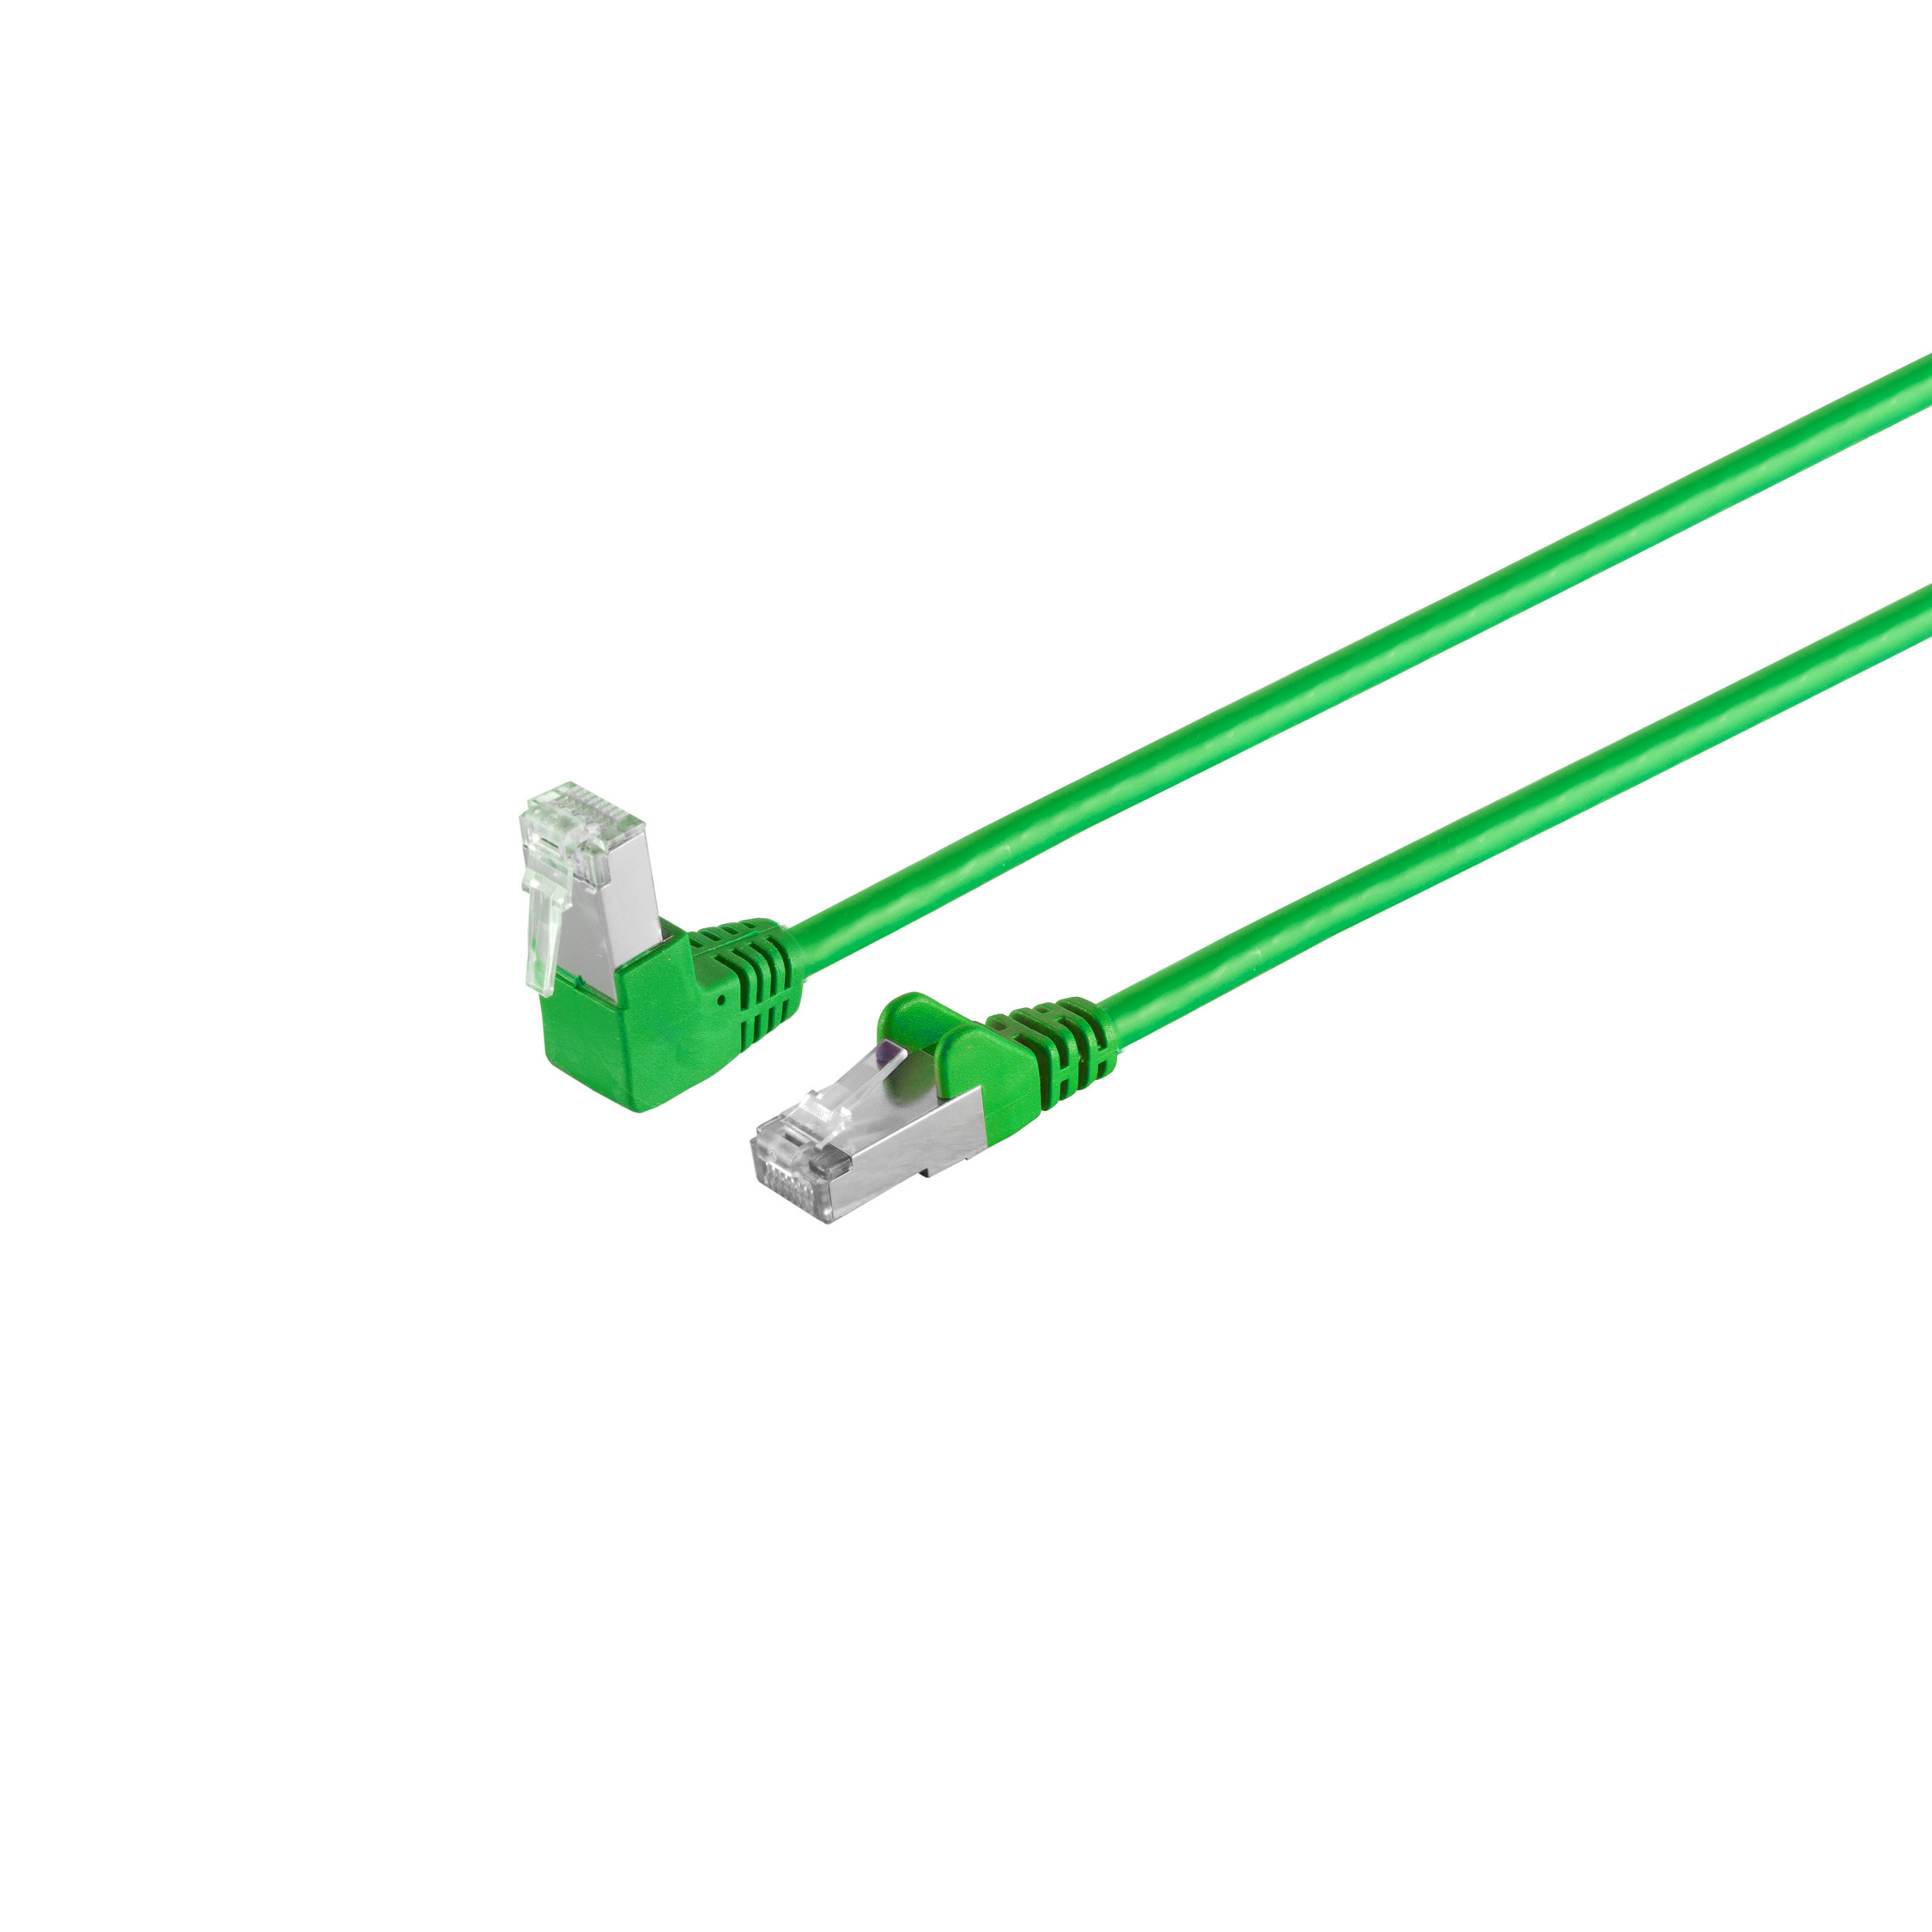 S/CONN MAXIMUM S/FTP Patchkabel CONNECTIVITY m grün 0,5m, cat Kabel PIMF RJ45, 6 Winkel-gerade 0,50